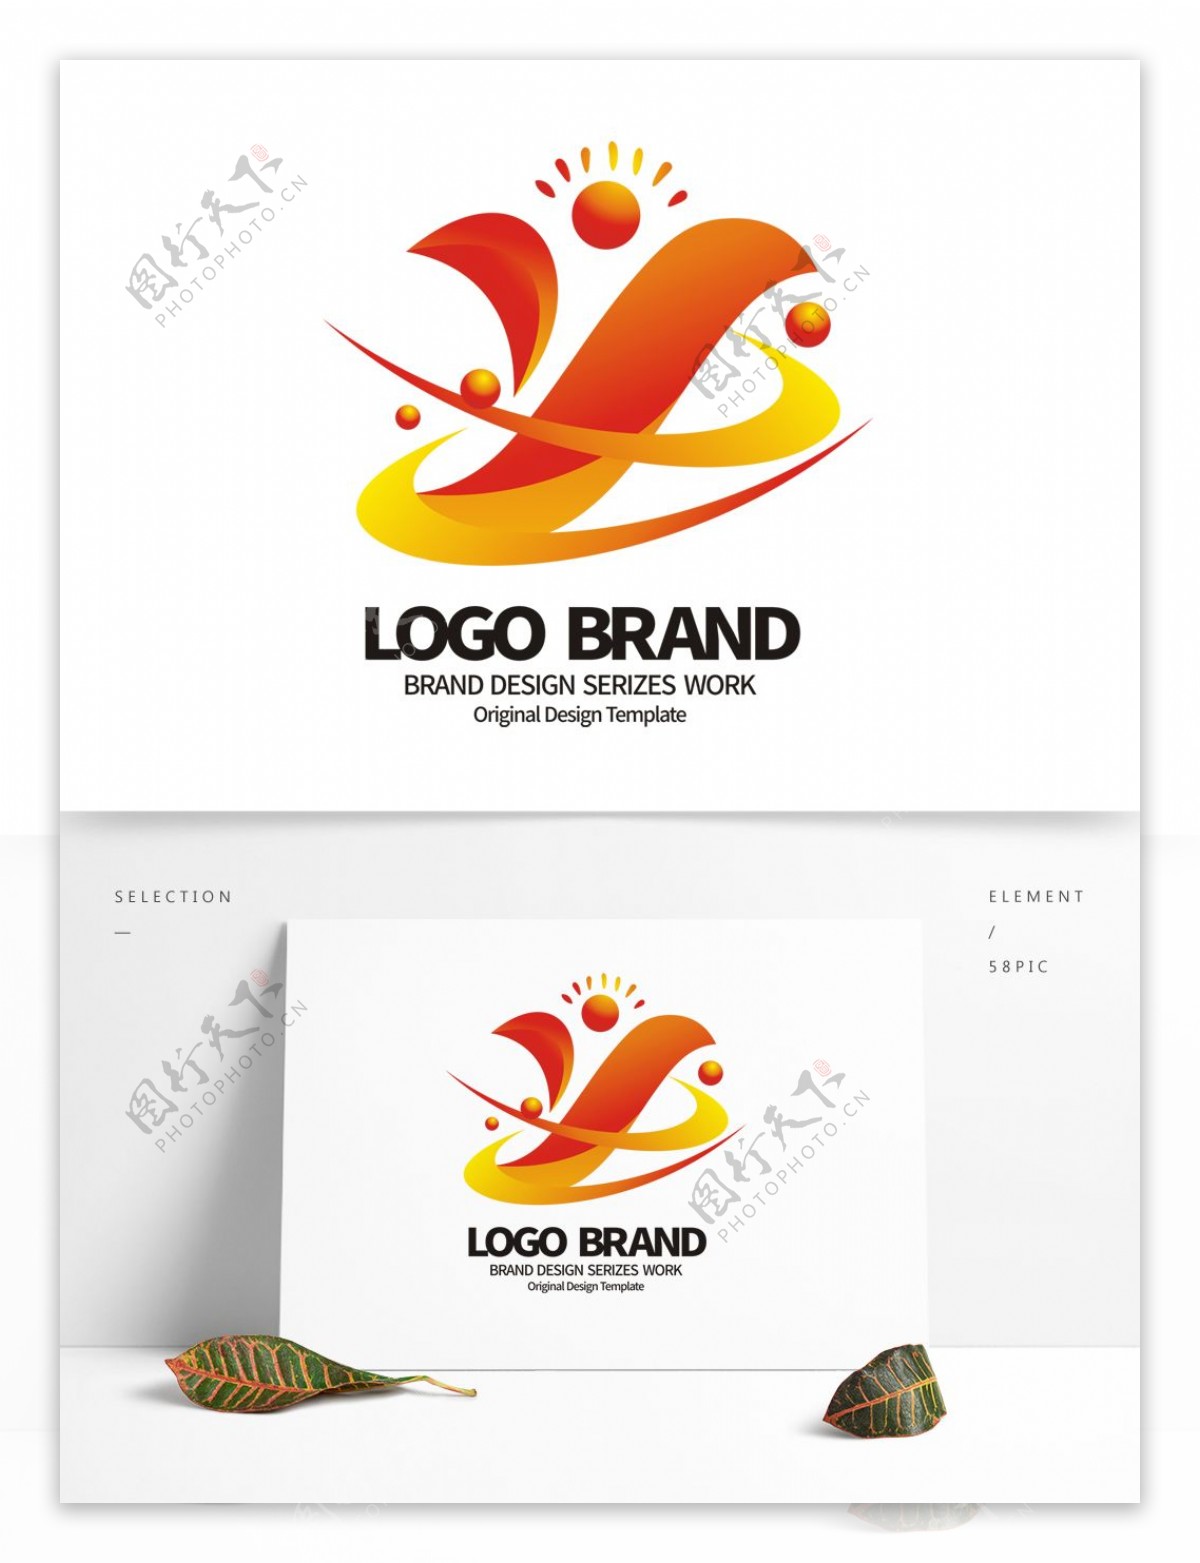 创意红黄飘带Y字母公司LOGO标志设计